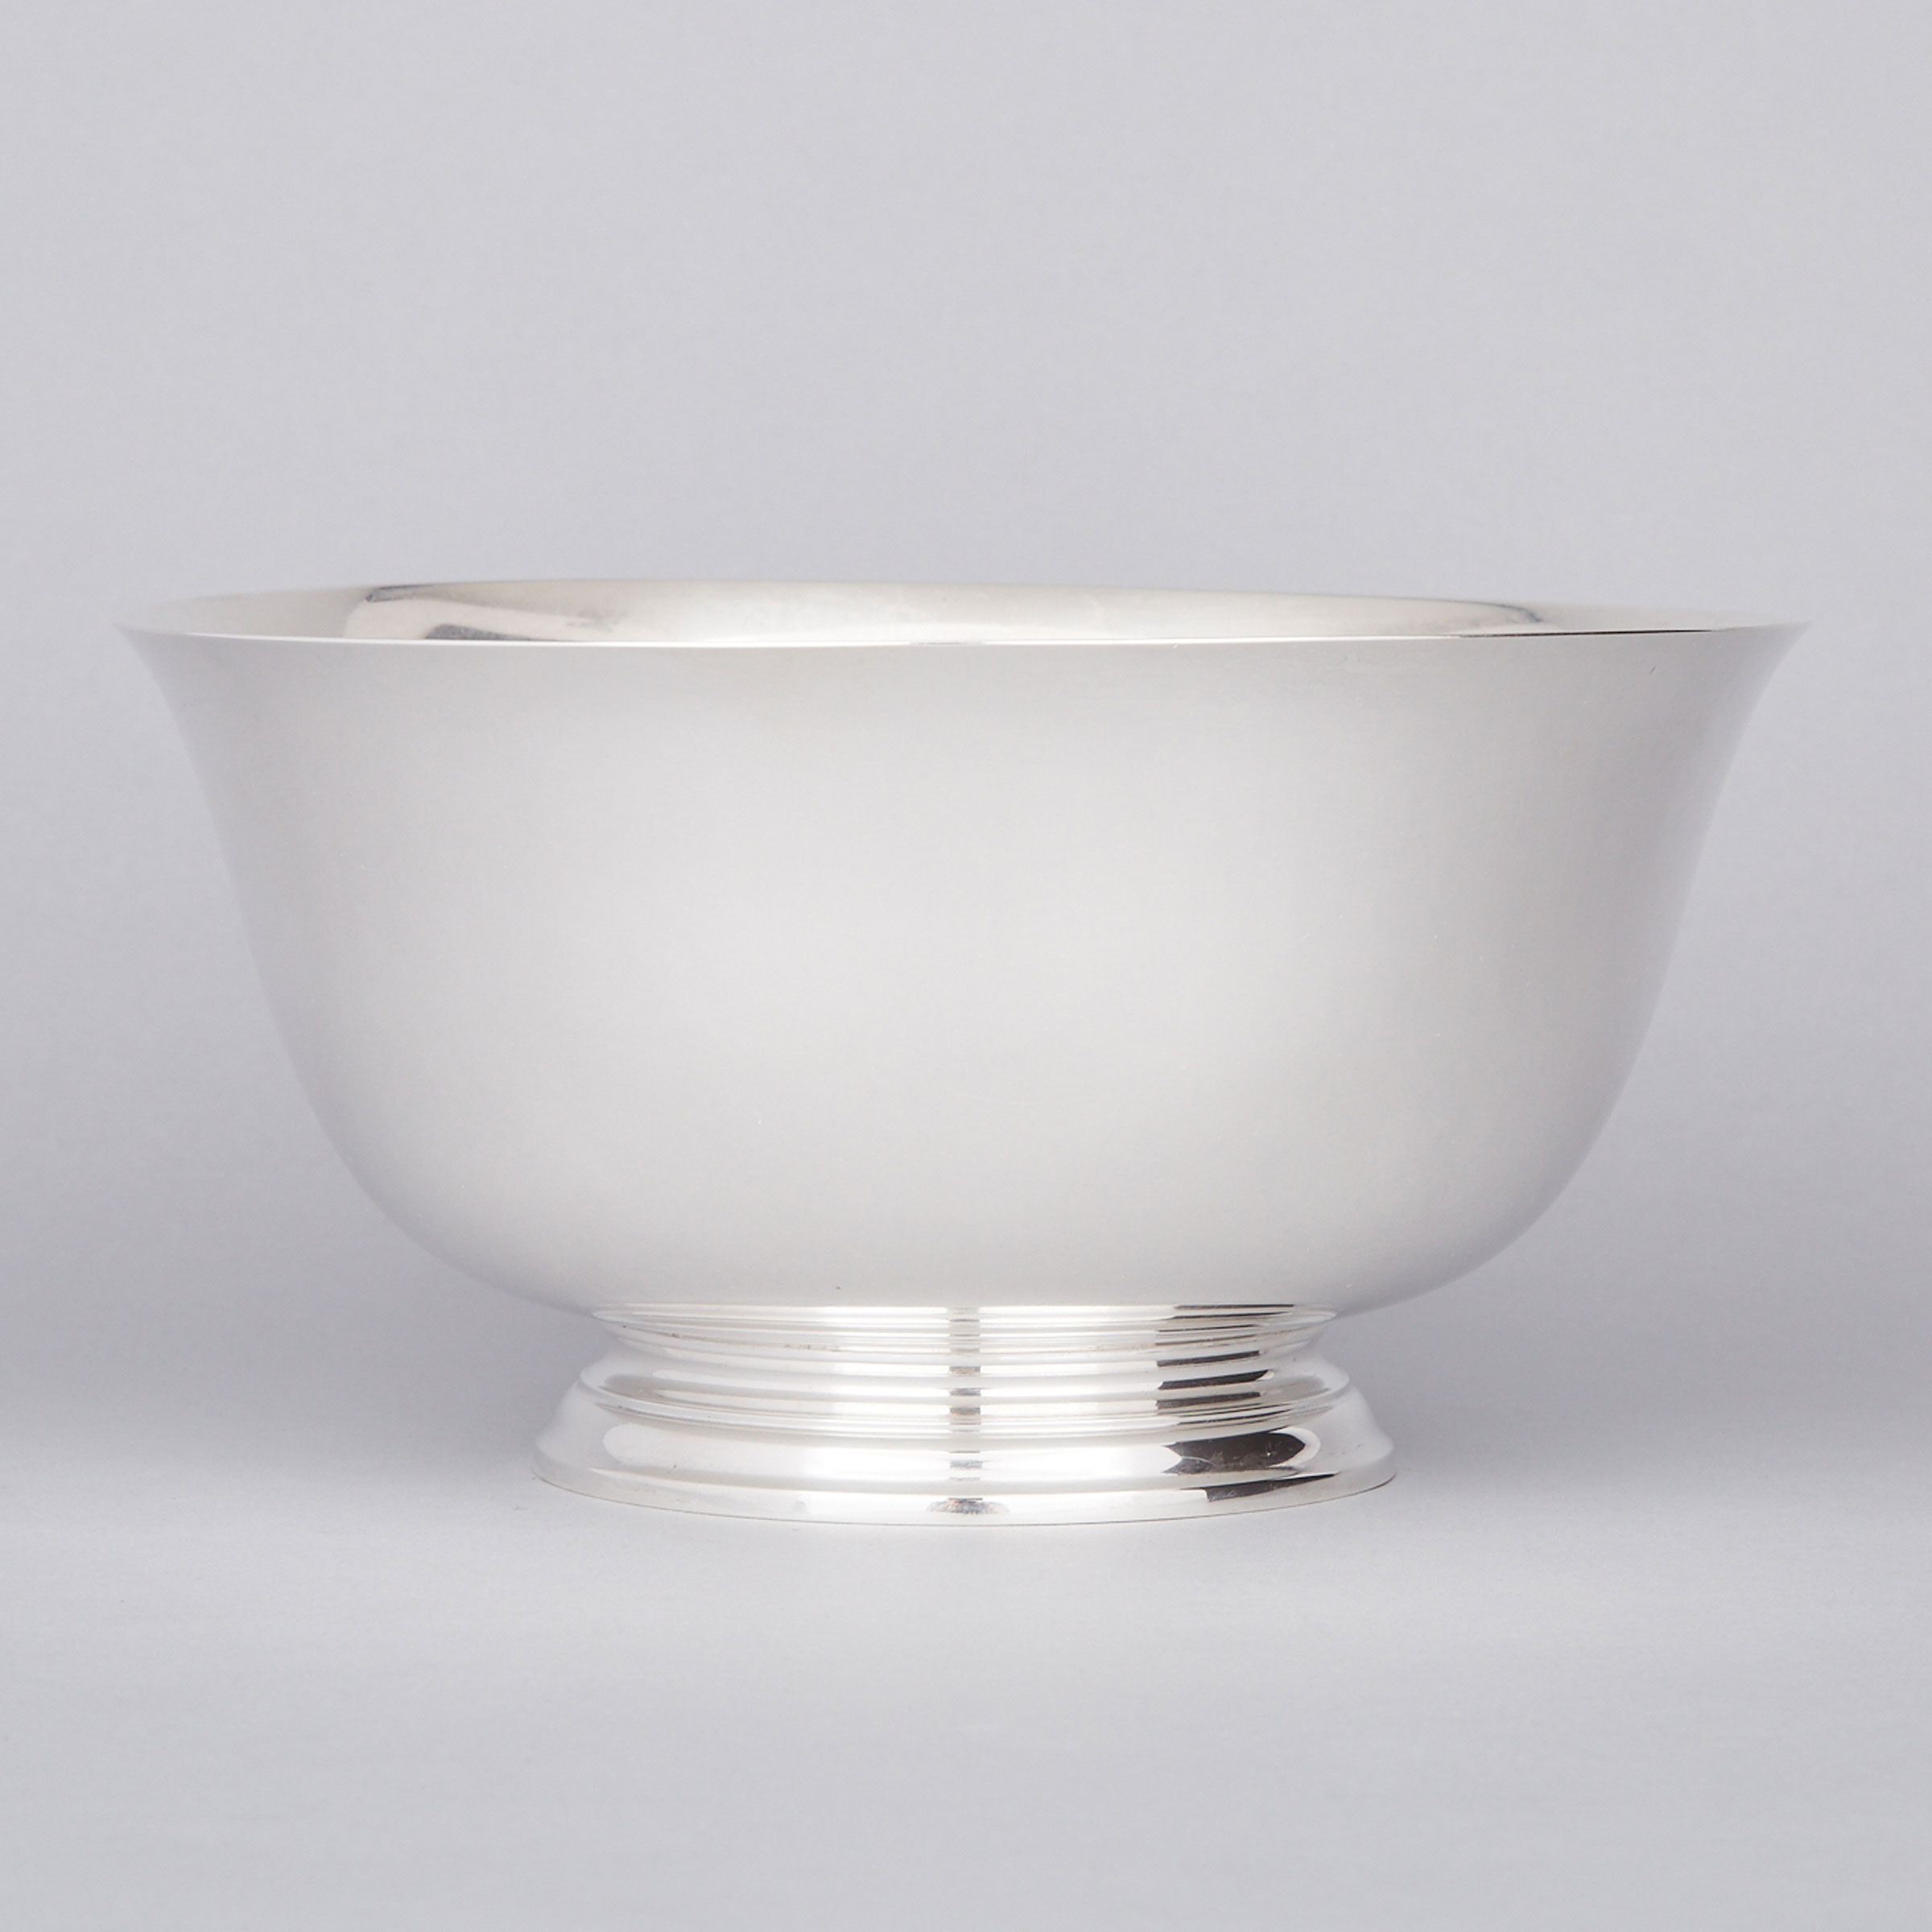 American Silver Bowl, Tiffany & Co., New York, N.Y., 20th century